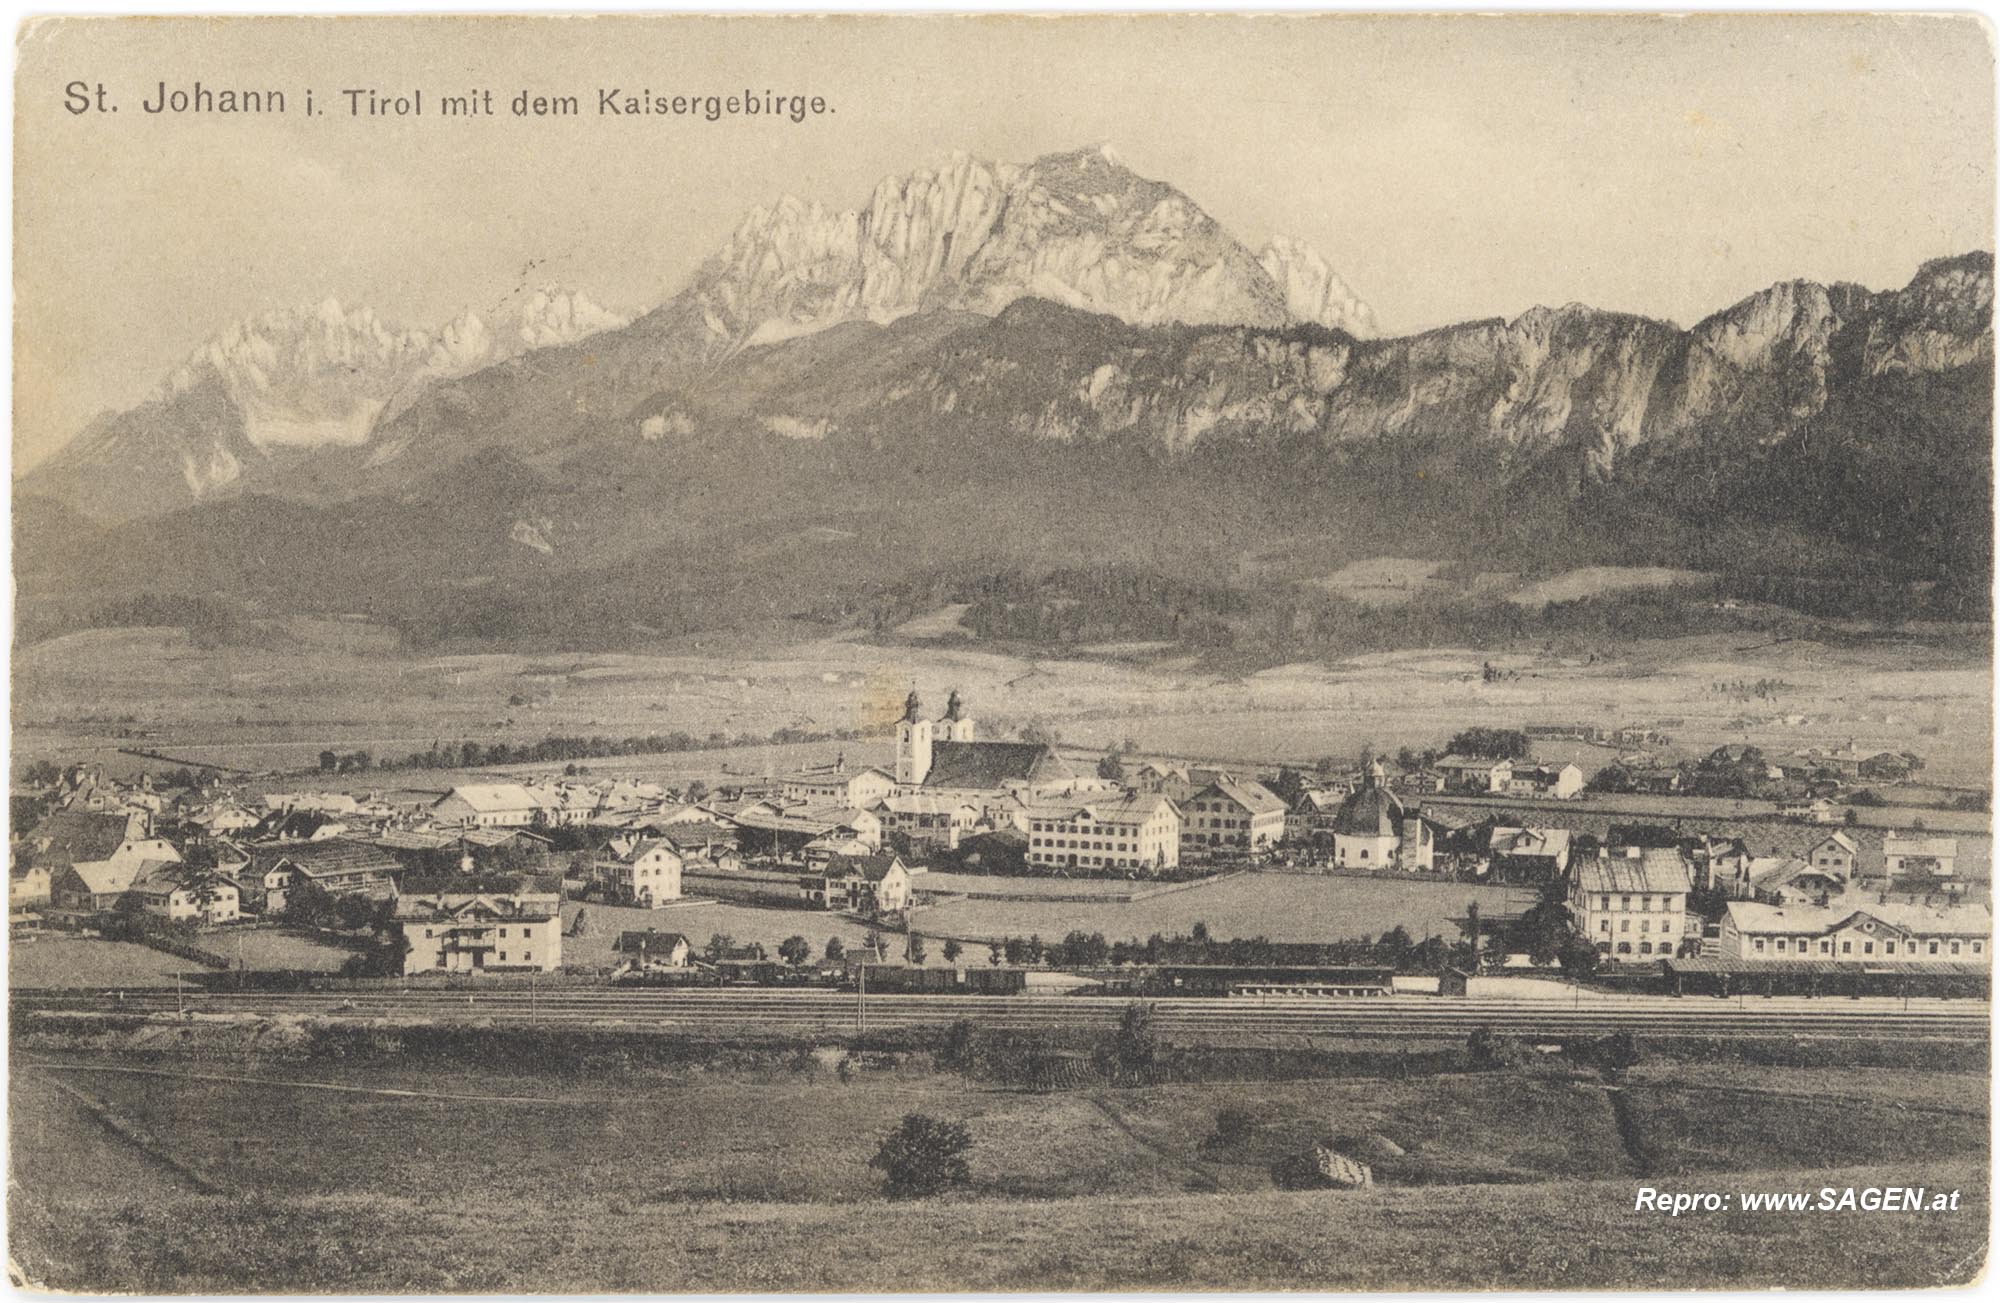 St. Johann in Tirol mit dem Kaisergebirge